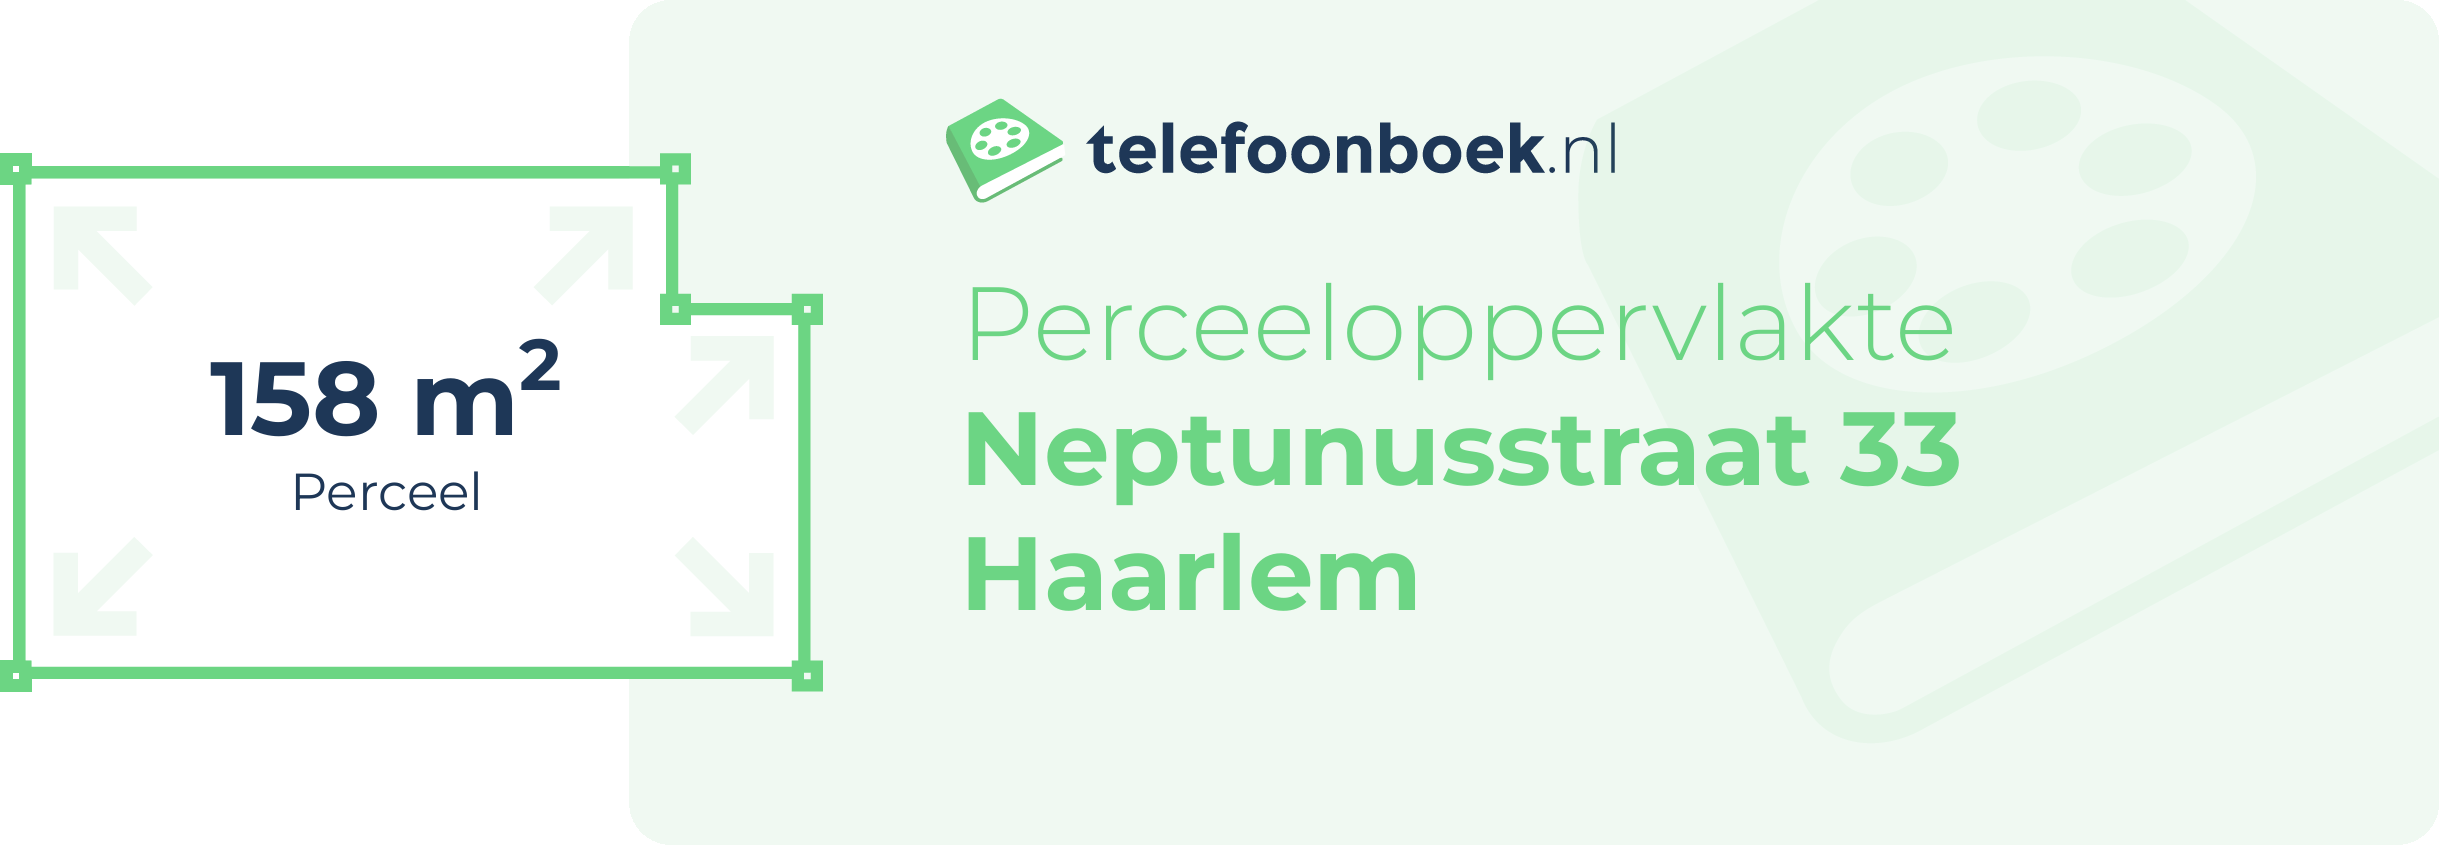 Perceeloppervlakte Neptunusstraat 33 Haarlem